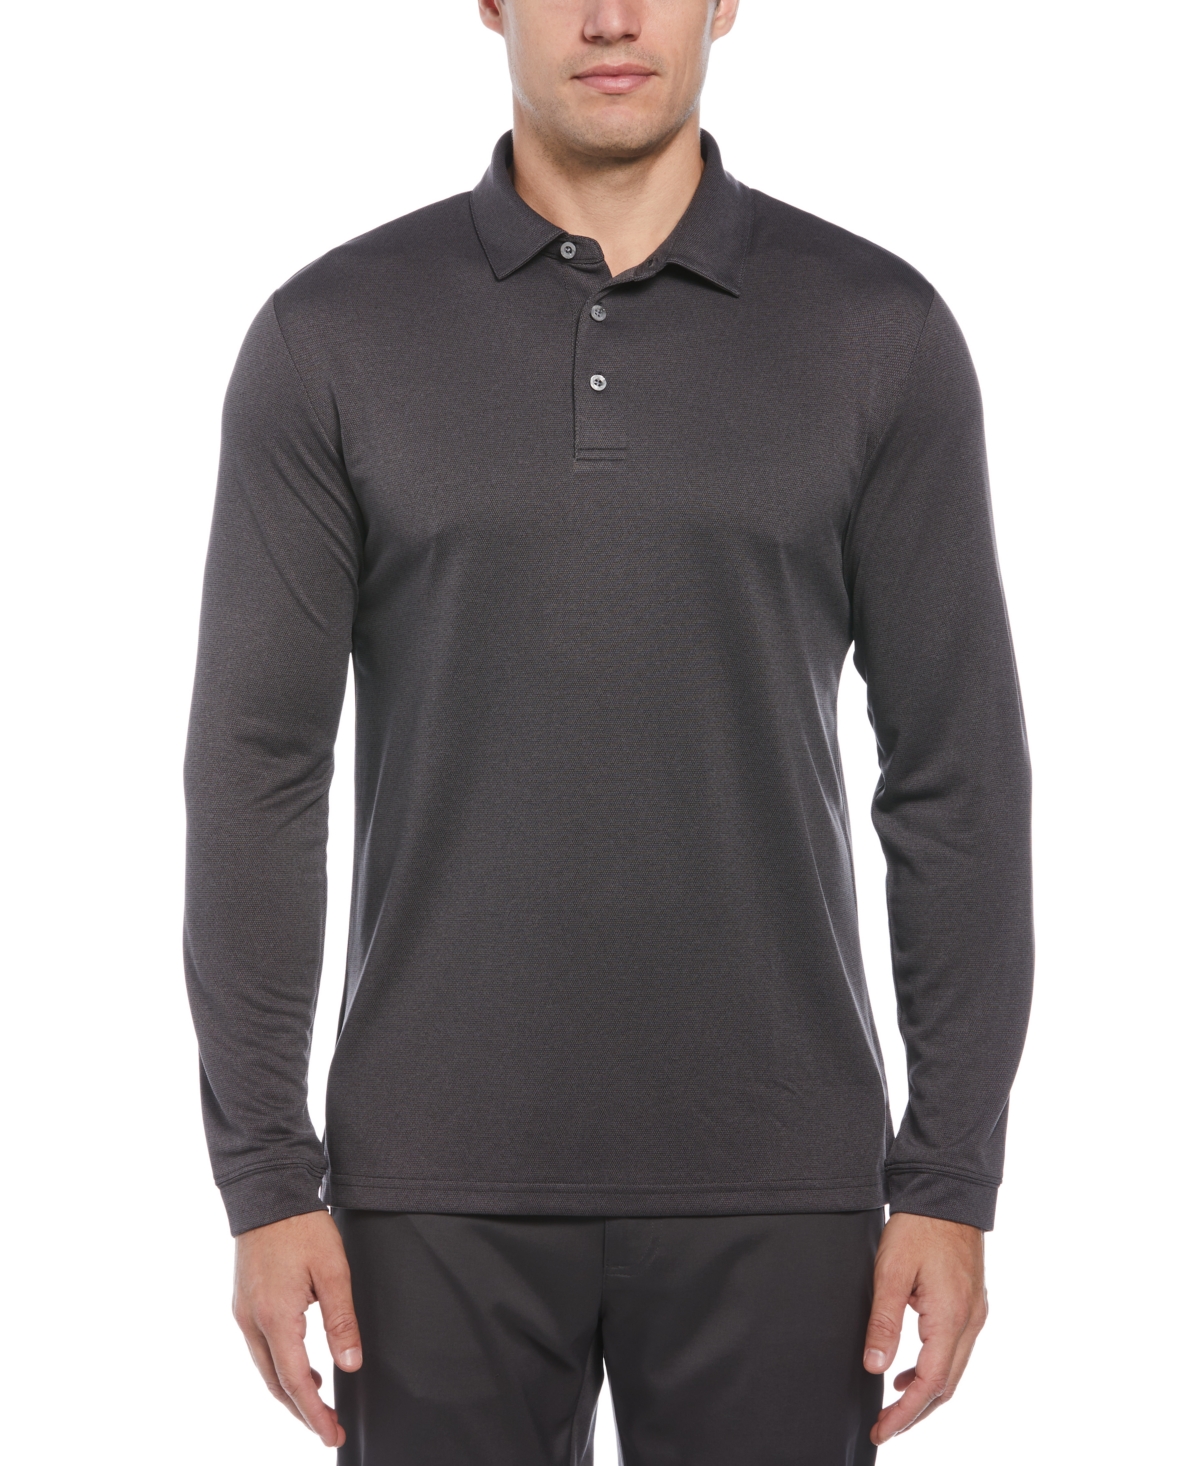 Pga Tour Men's Micro Birdseye Long Sleeve Golf Polo Shirt In Iron Caviar Heather